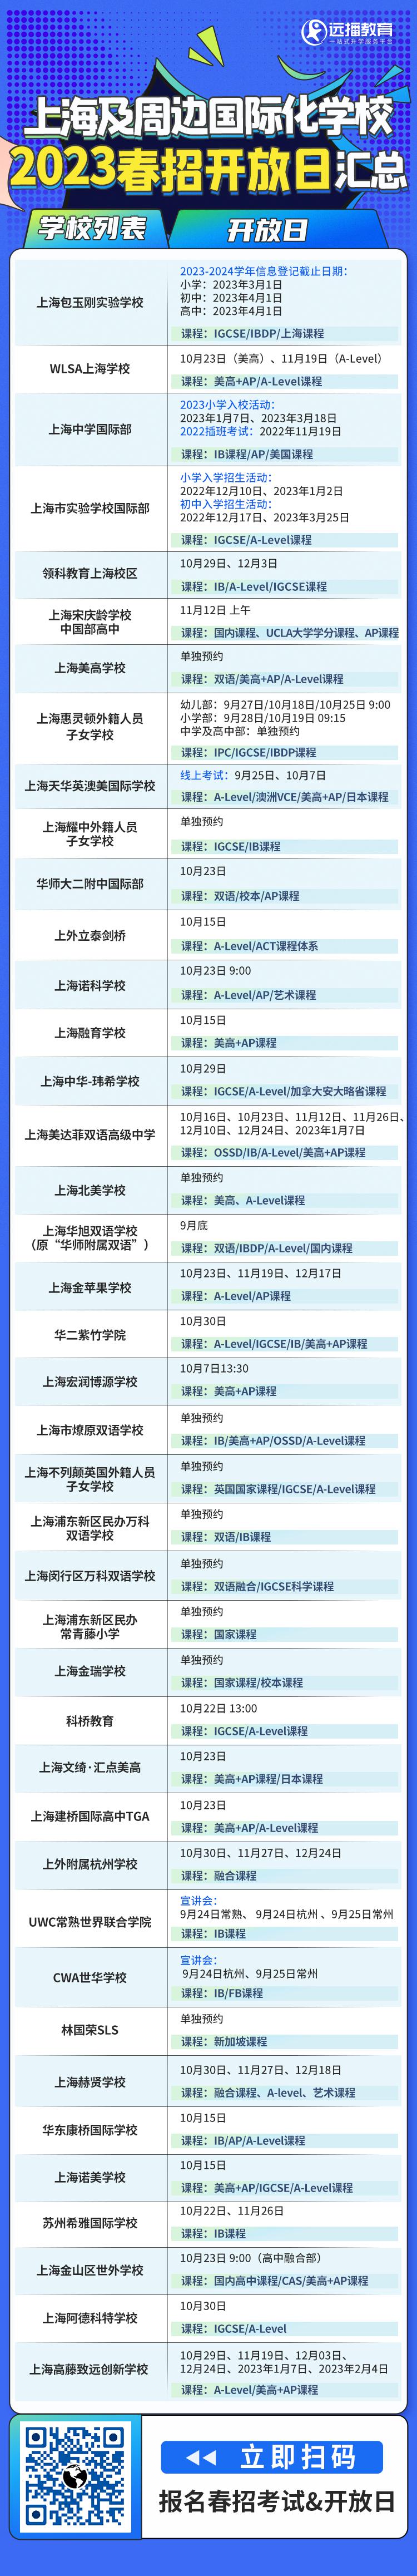 2023春招上海及周边国际化学校的春招&开放日的信息